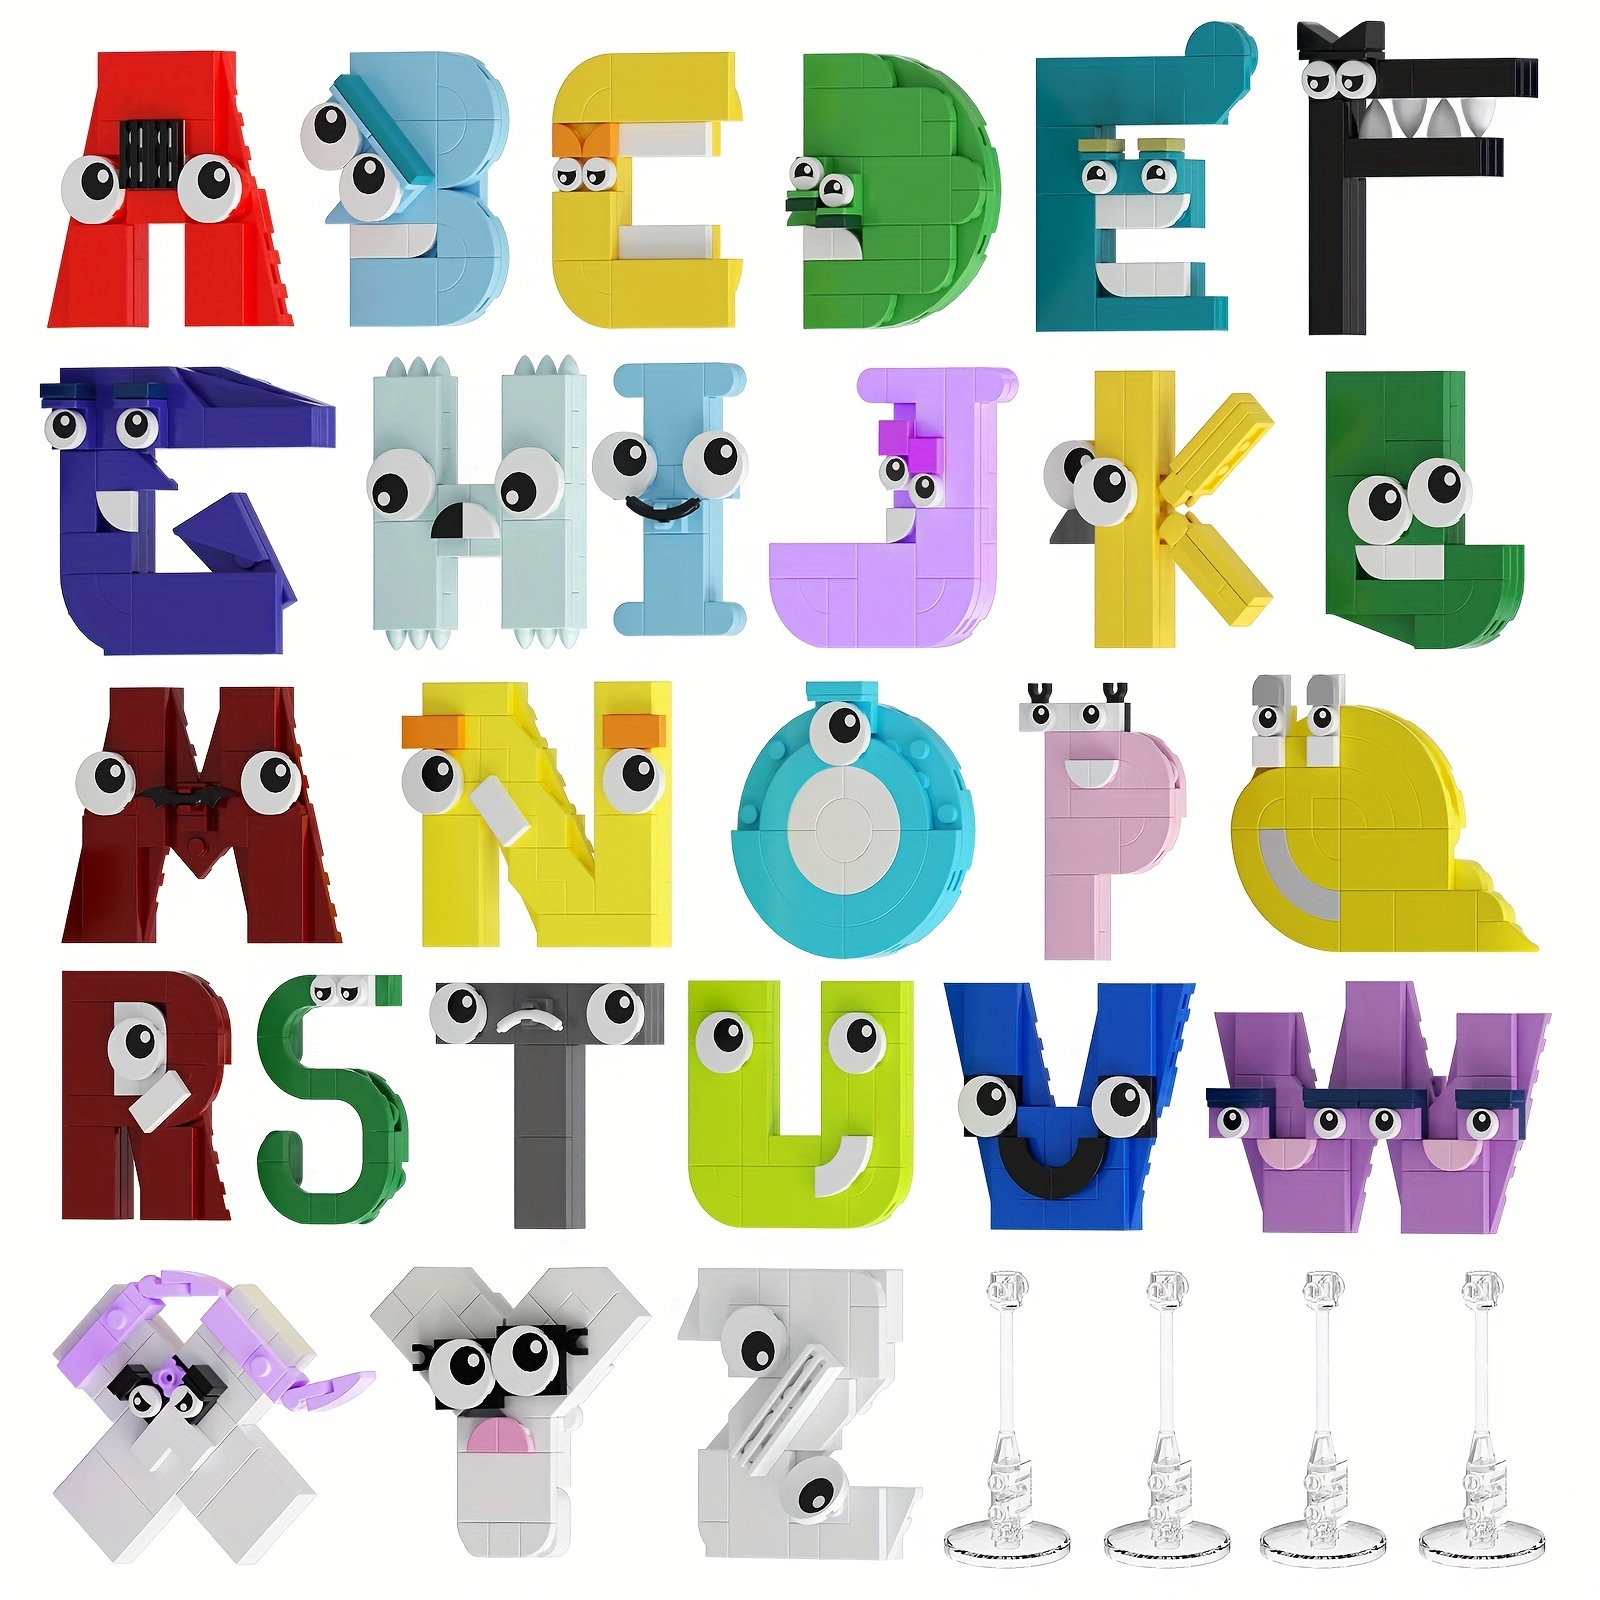 Funny Alphabet Lore Letter L - Alphabet Letters - Sticker